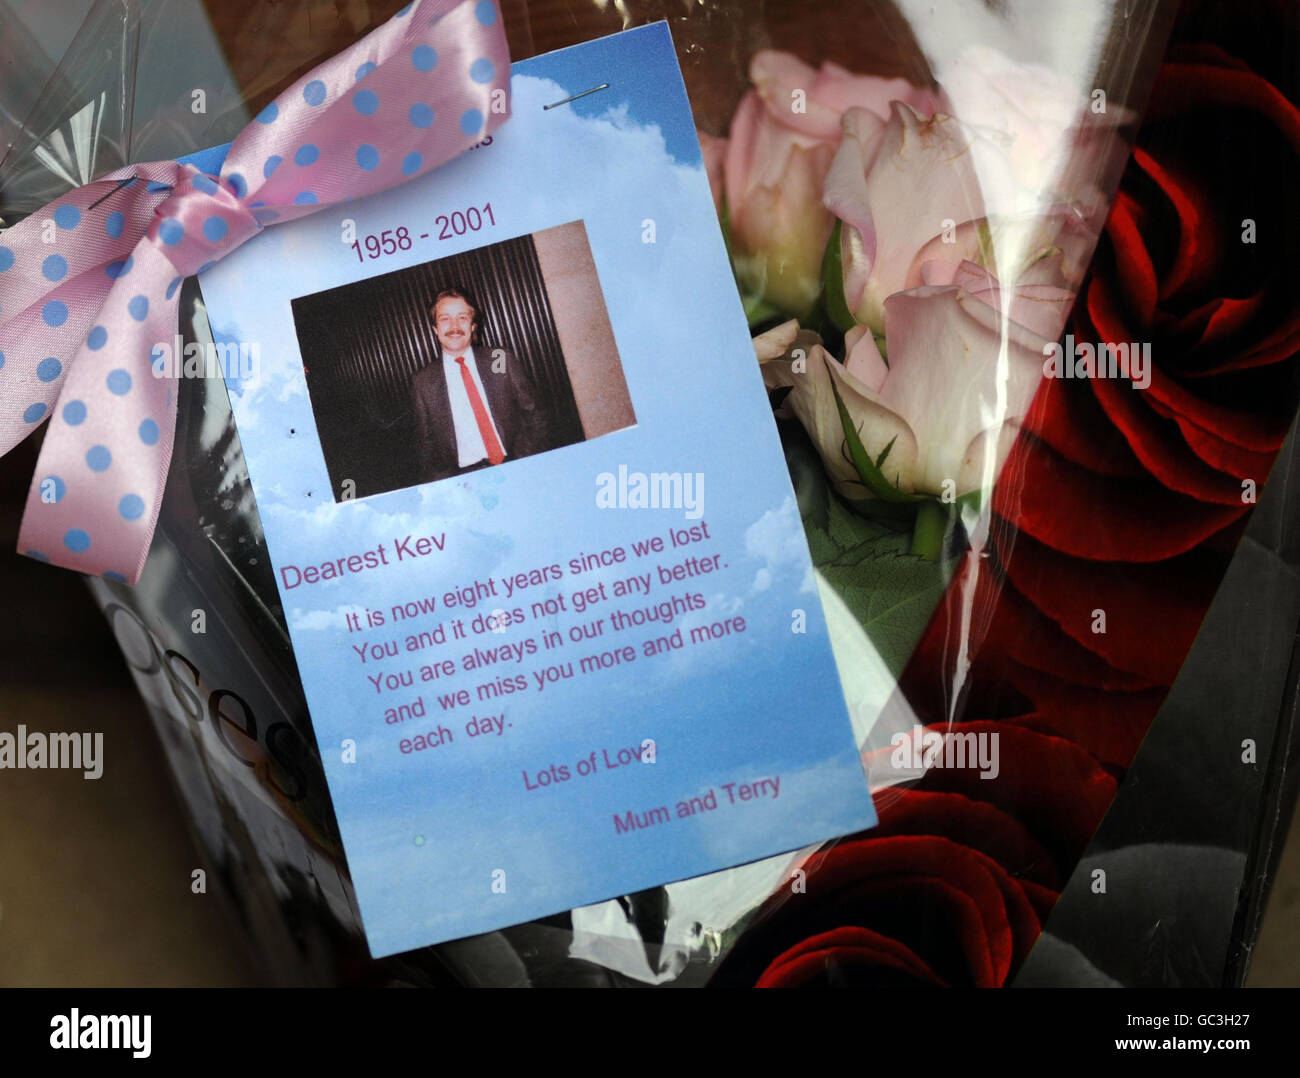 I fiori sono lasciati al Memorial Garden del settembre 11, a Grosvenor Square, Londra, dove doveva aver luogo un concerto commemorativo che segnò gli attacchi terroristici negli Stati Uniti nel 2001. Foto Stock